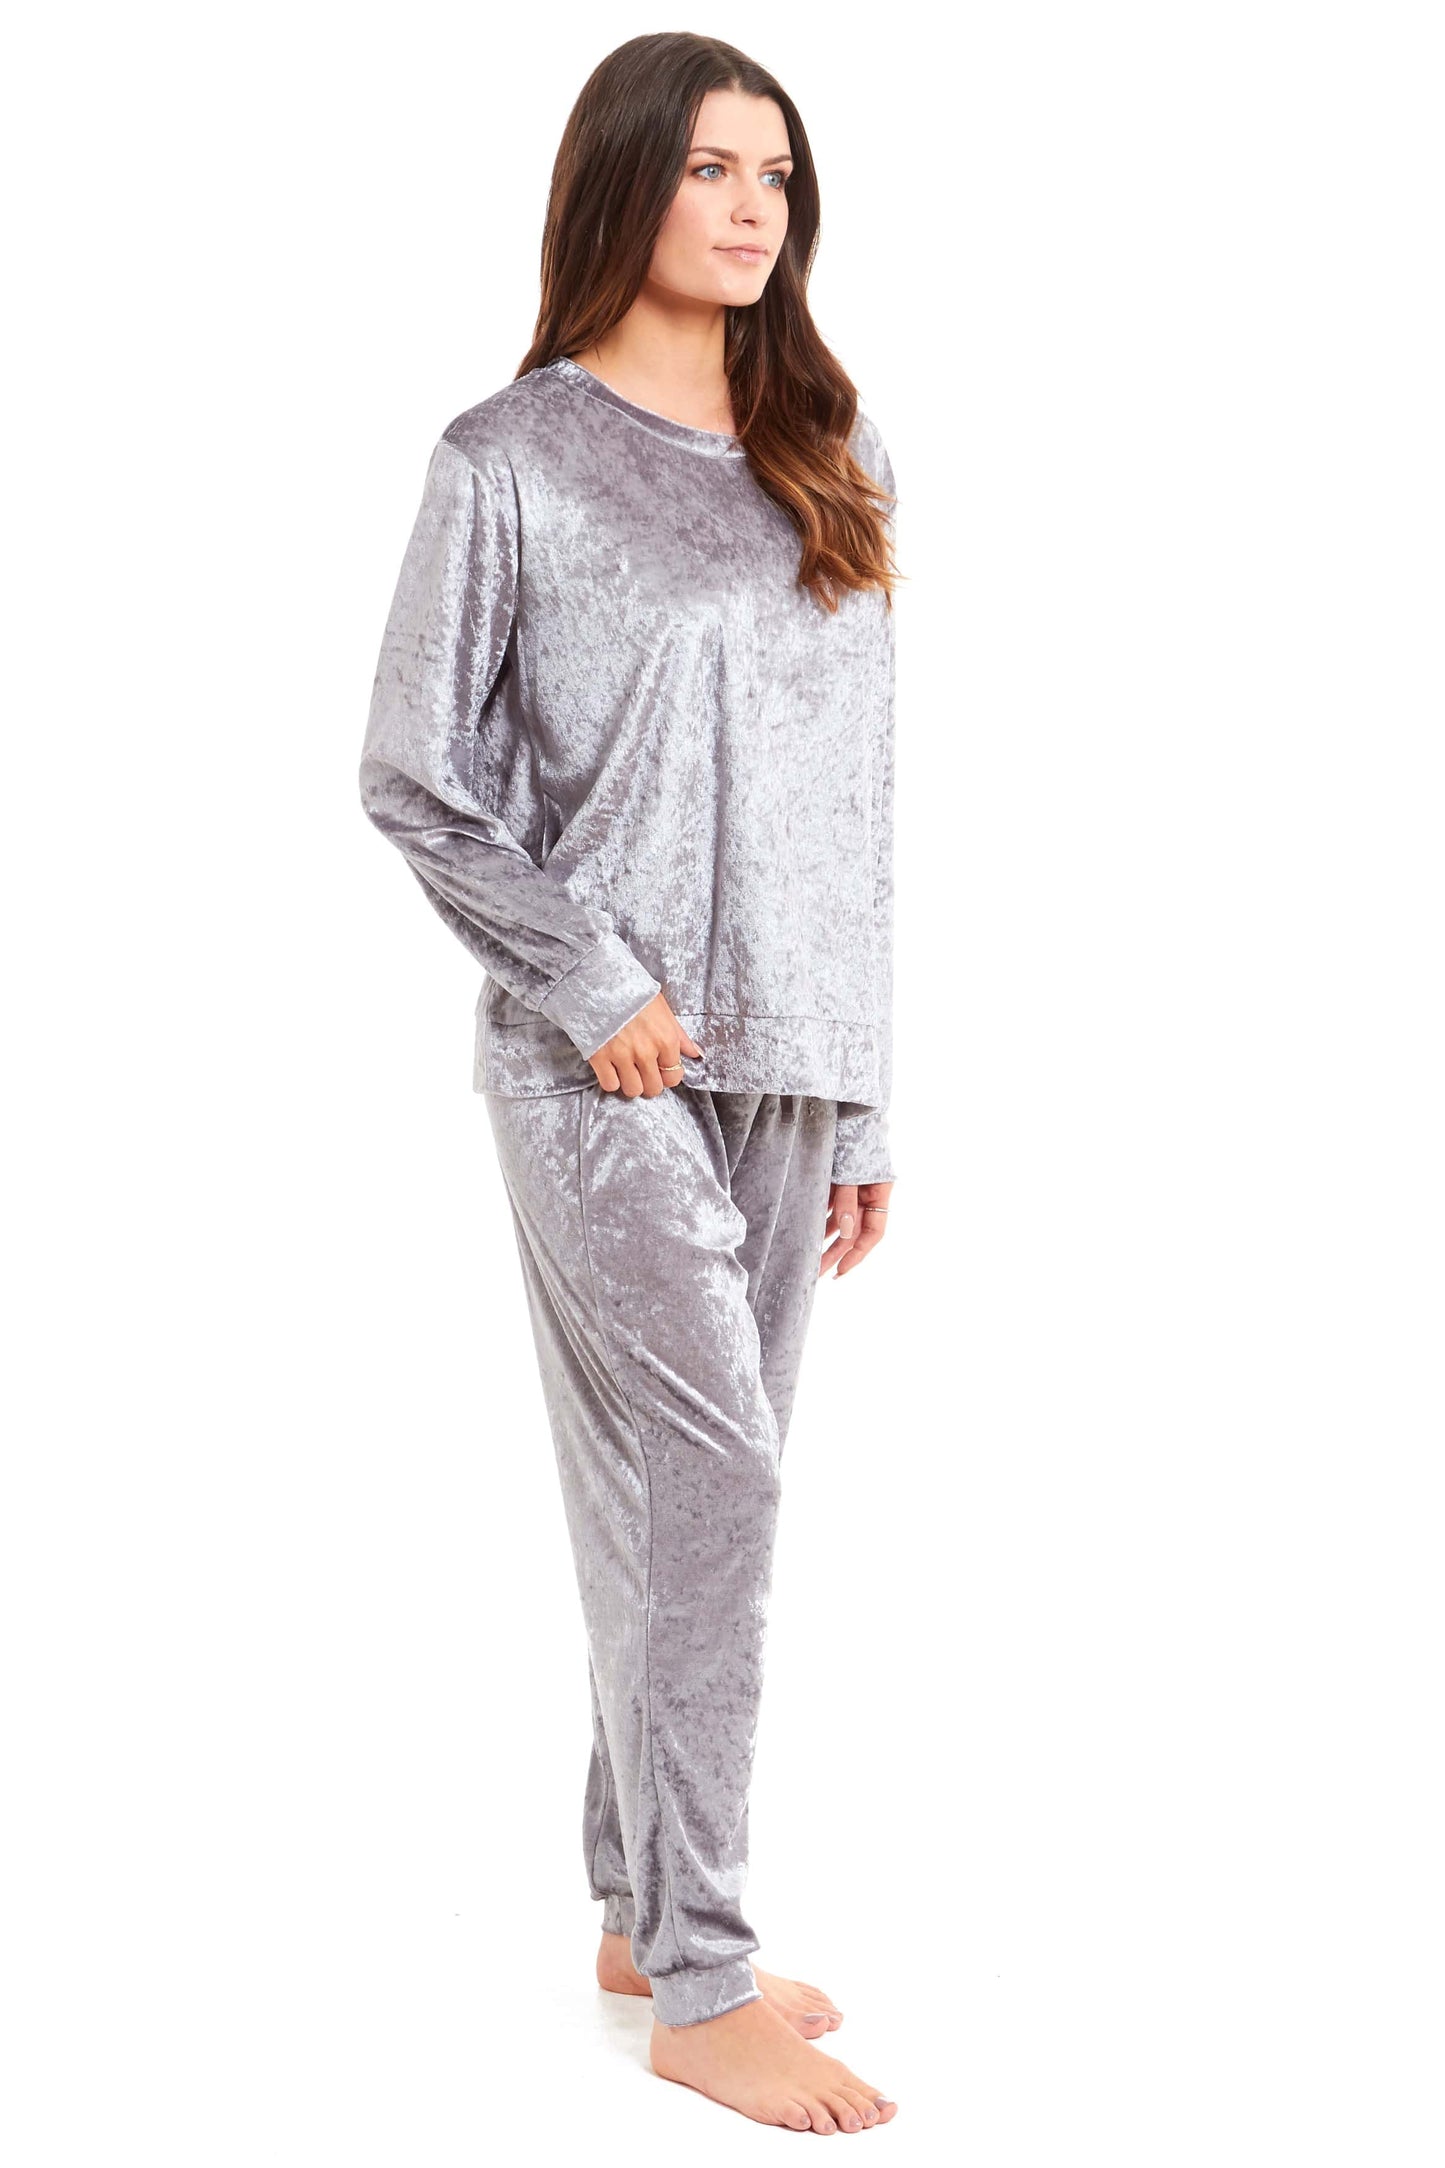 Crushed Velvet Pajamas Set